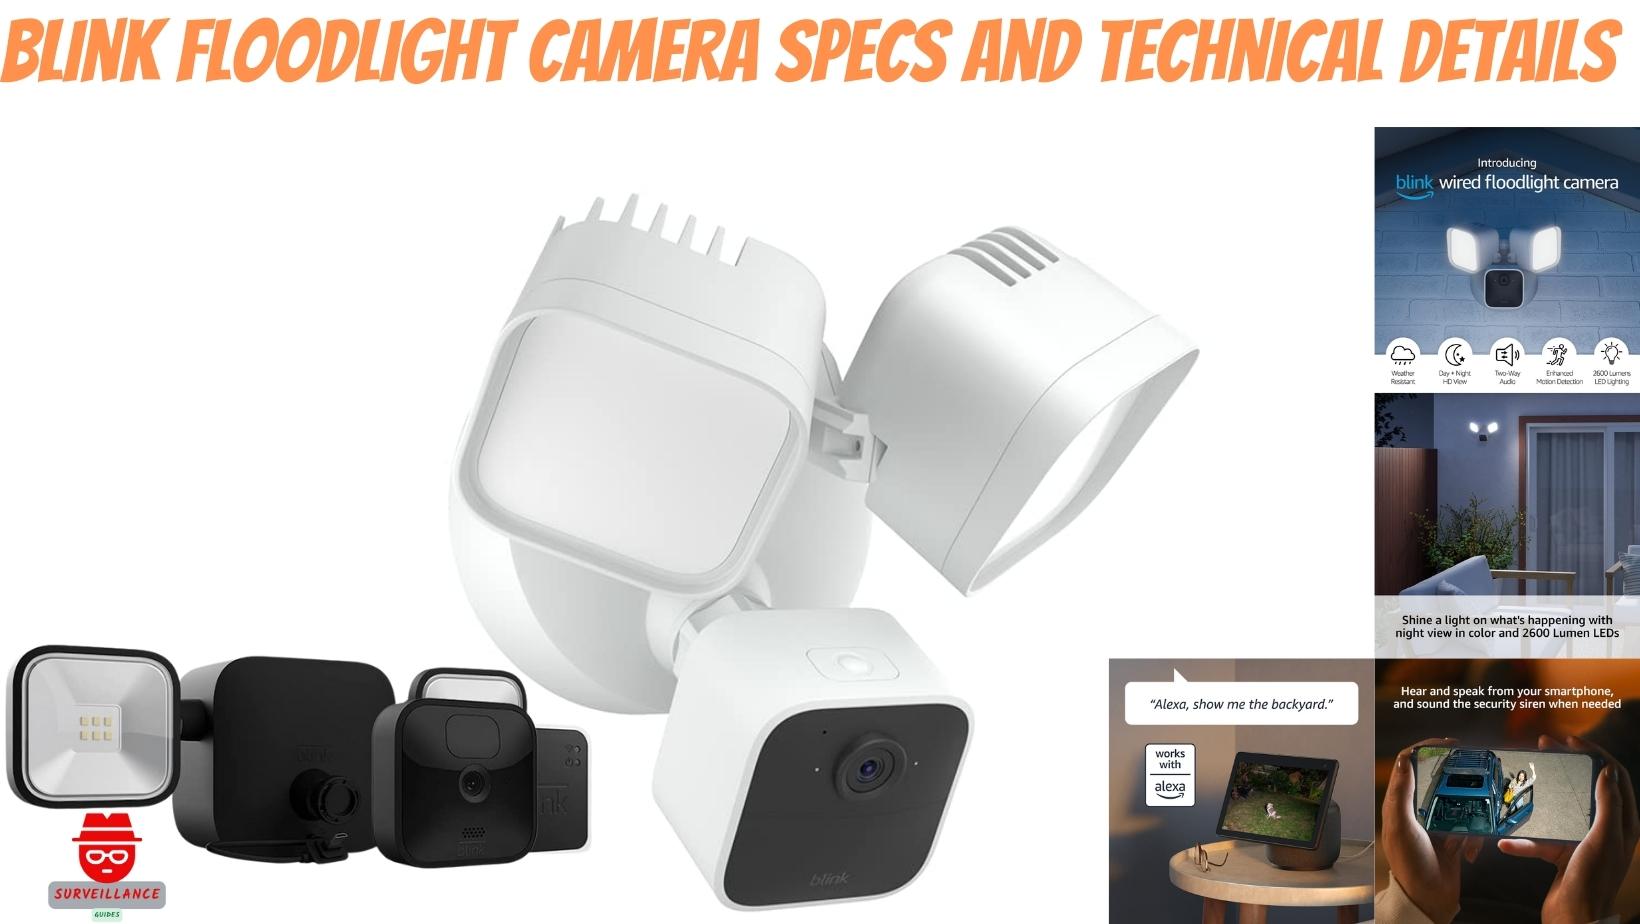 Blink Floodlight Camera Specs